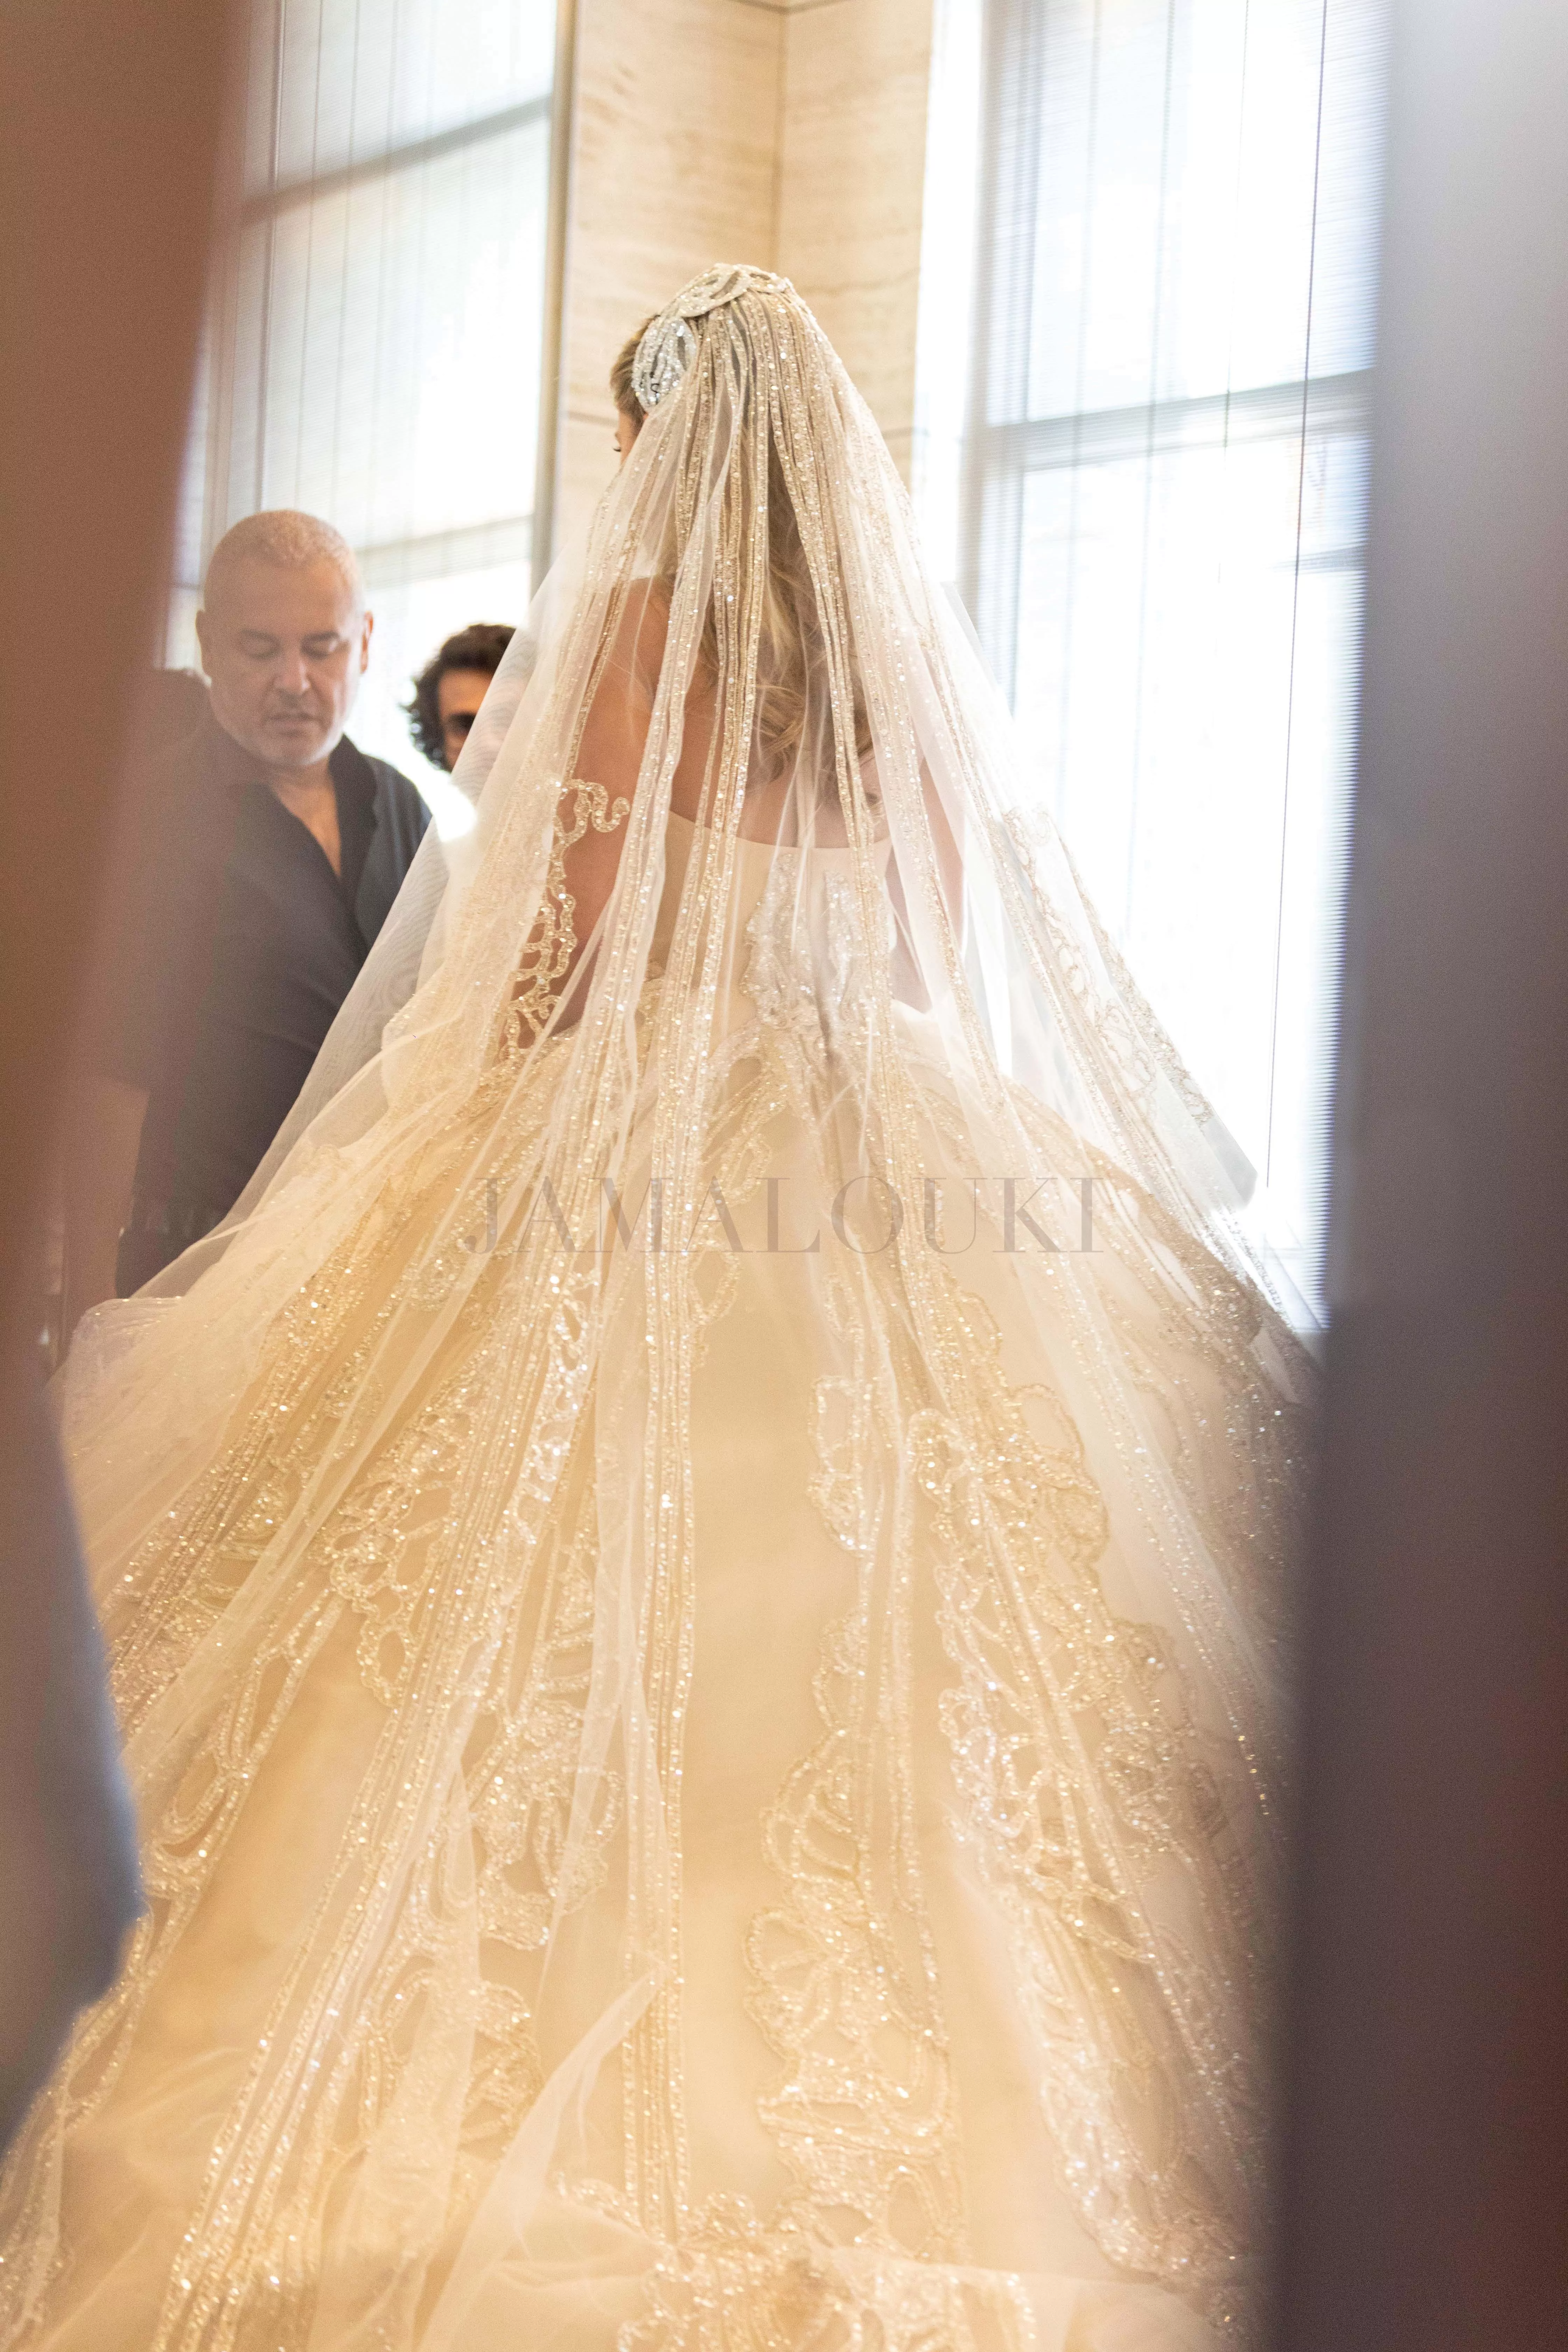 فستان زفاف كريستينا مراد: من قيد التنفيذ إلى تحفة فنية!